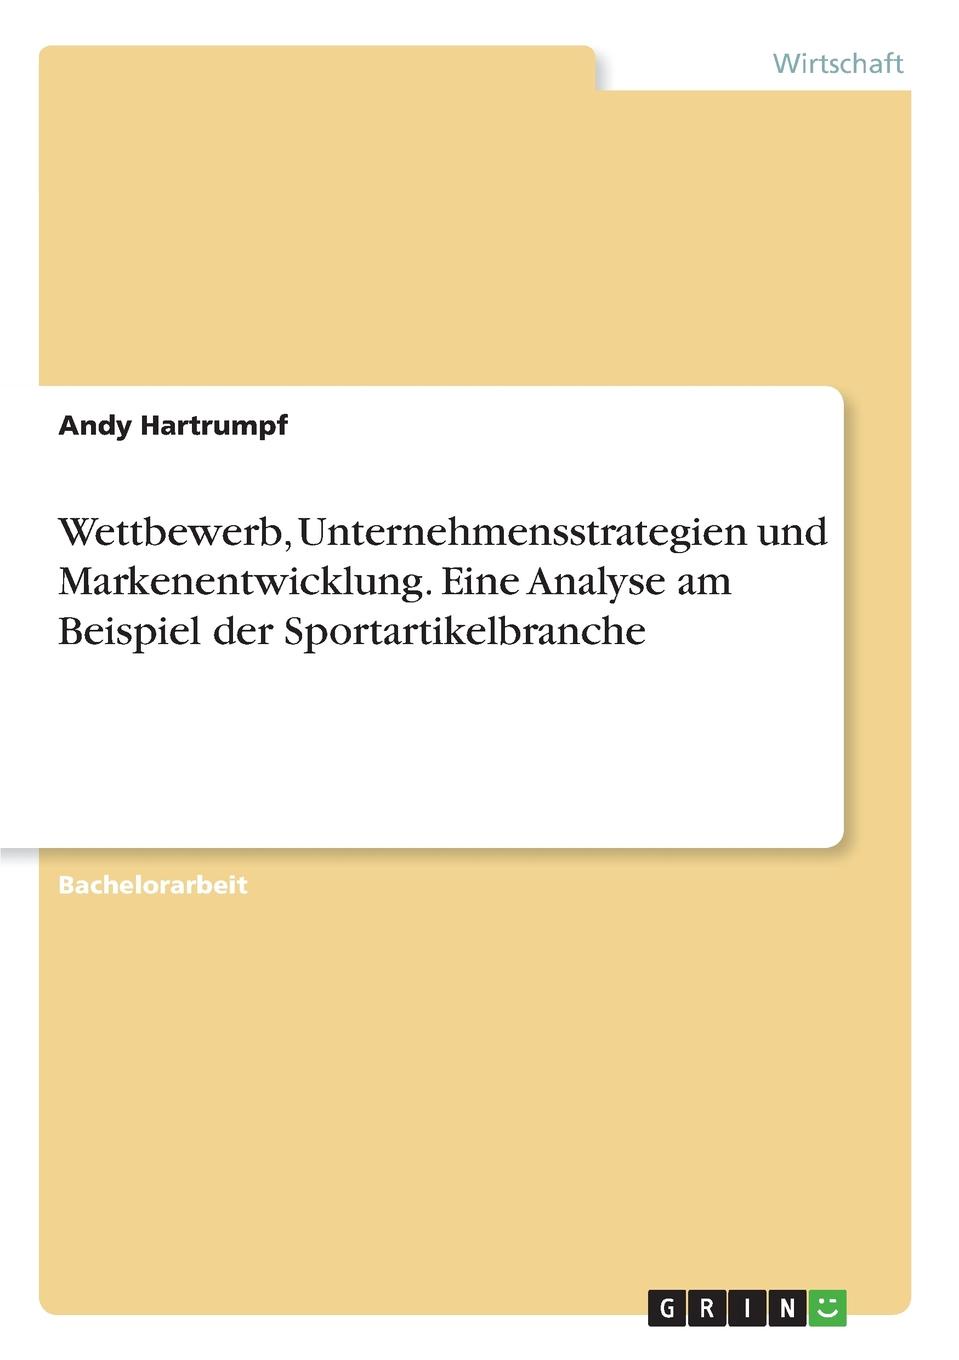 Andy Hartrumpf Wettbewerb, Unternehmensstrategien und Markenentwicklung. Eine Analyse am Beispiel der Sportartikelbranche